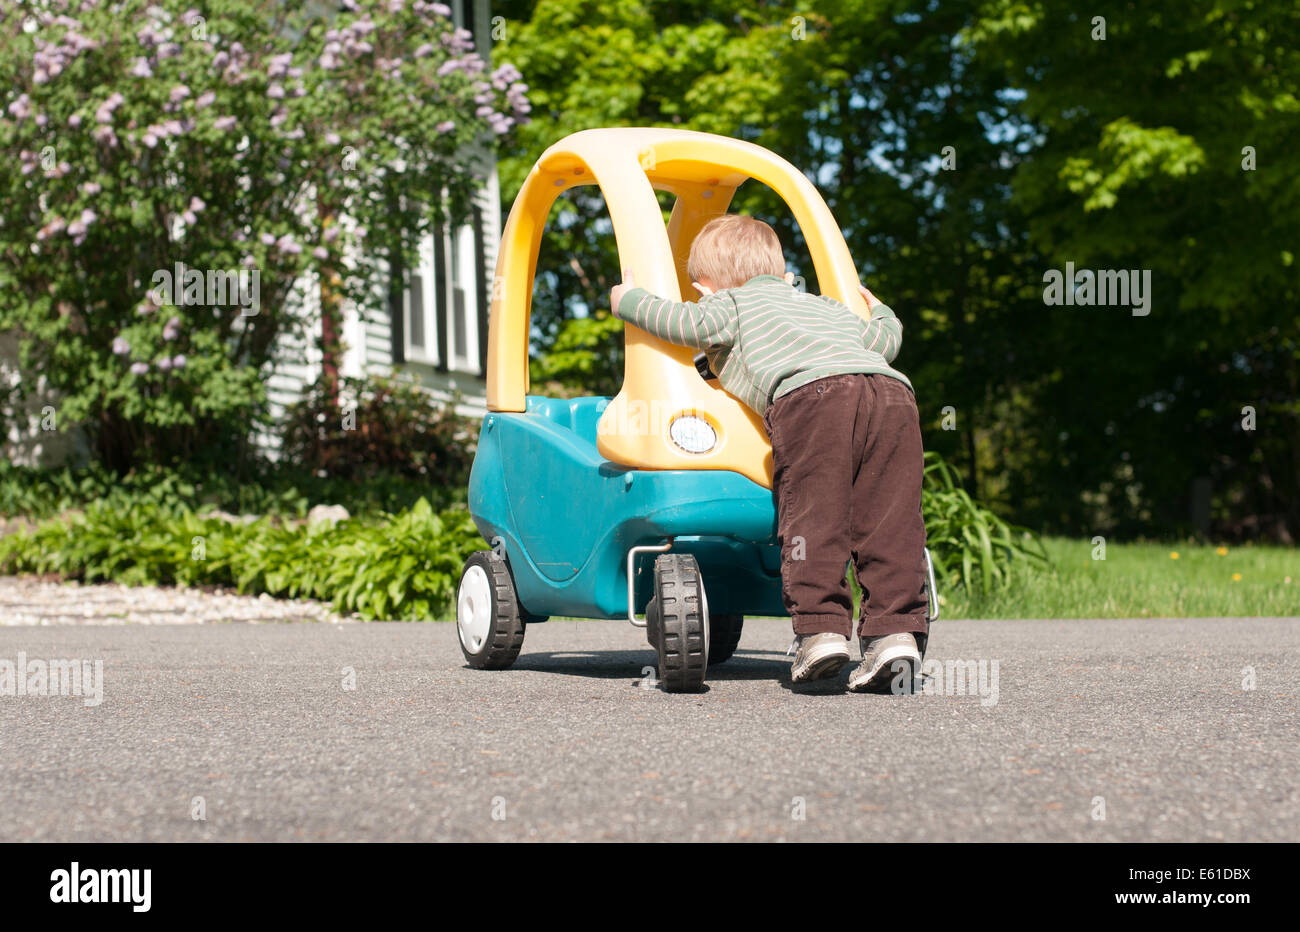 Ein Kleinkind junge lehnt sich über die Front seines großen Spielzeug-Autos, als ob er daran arbeiten wird. Stockfoto